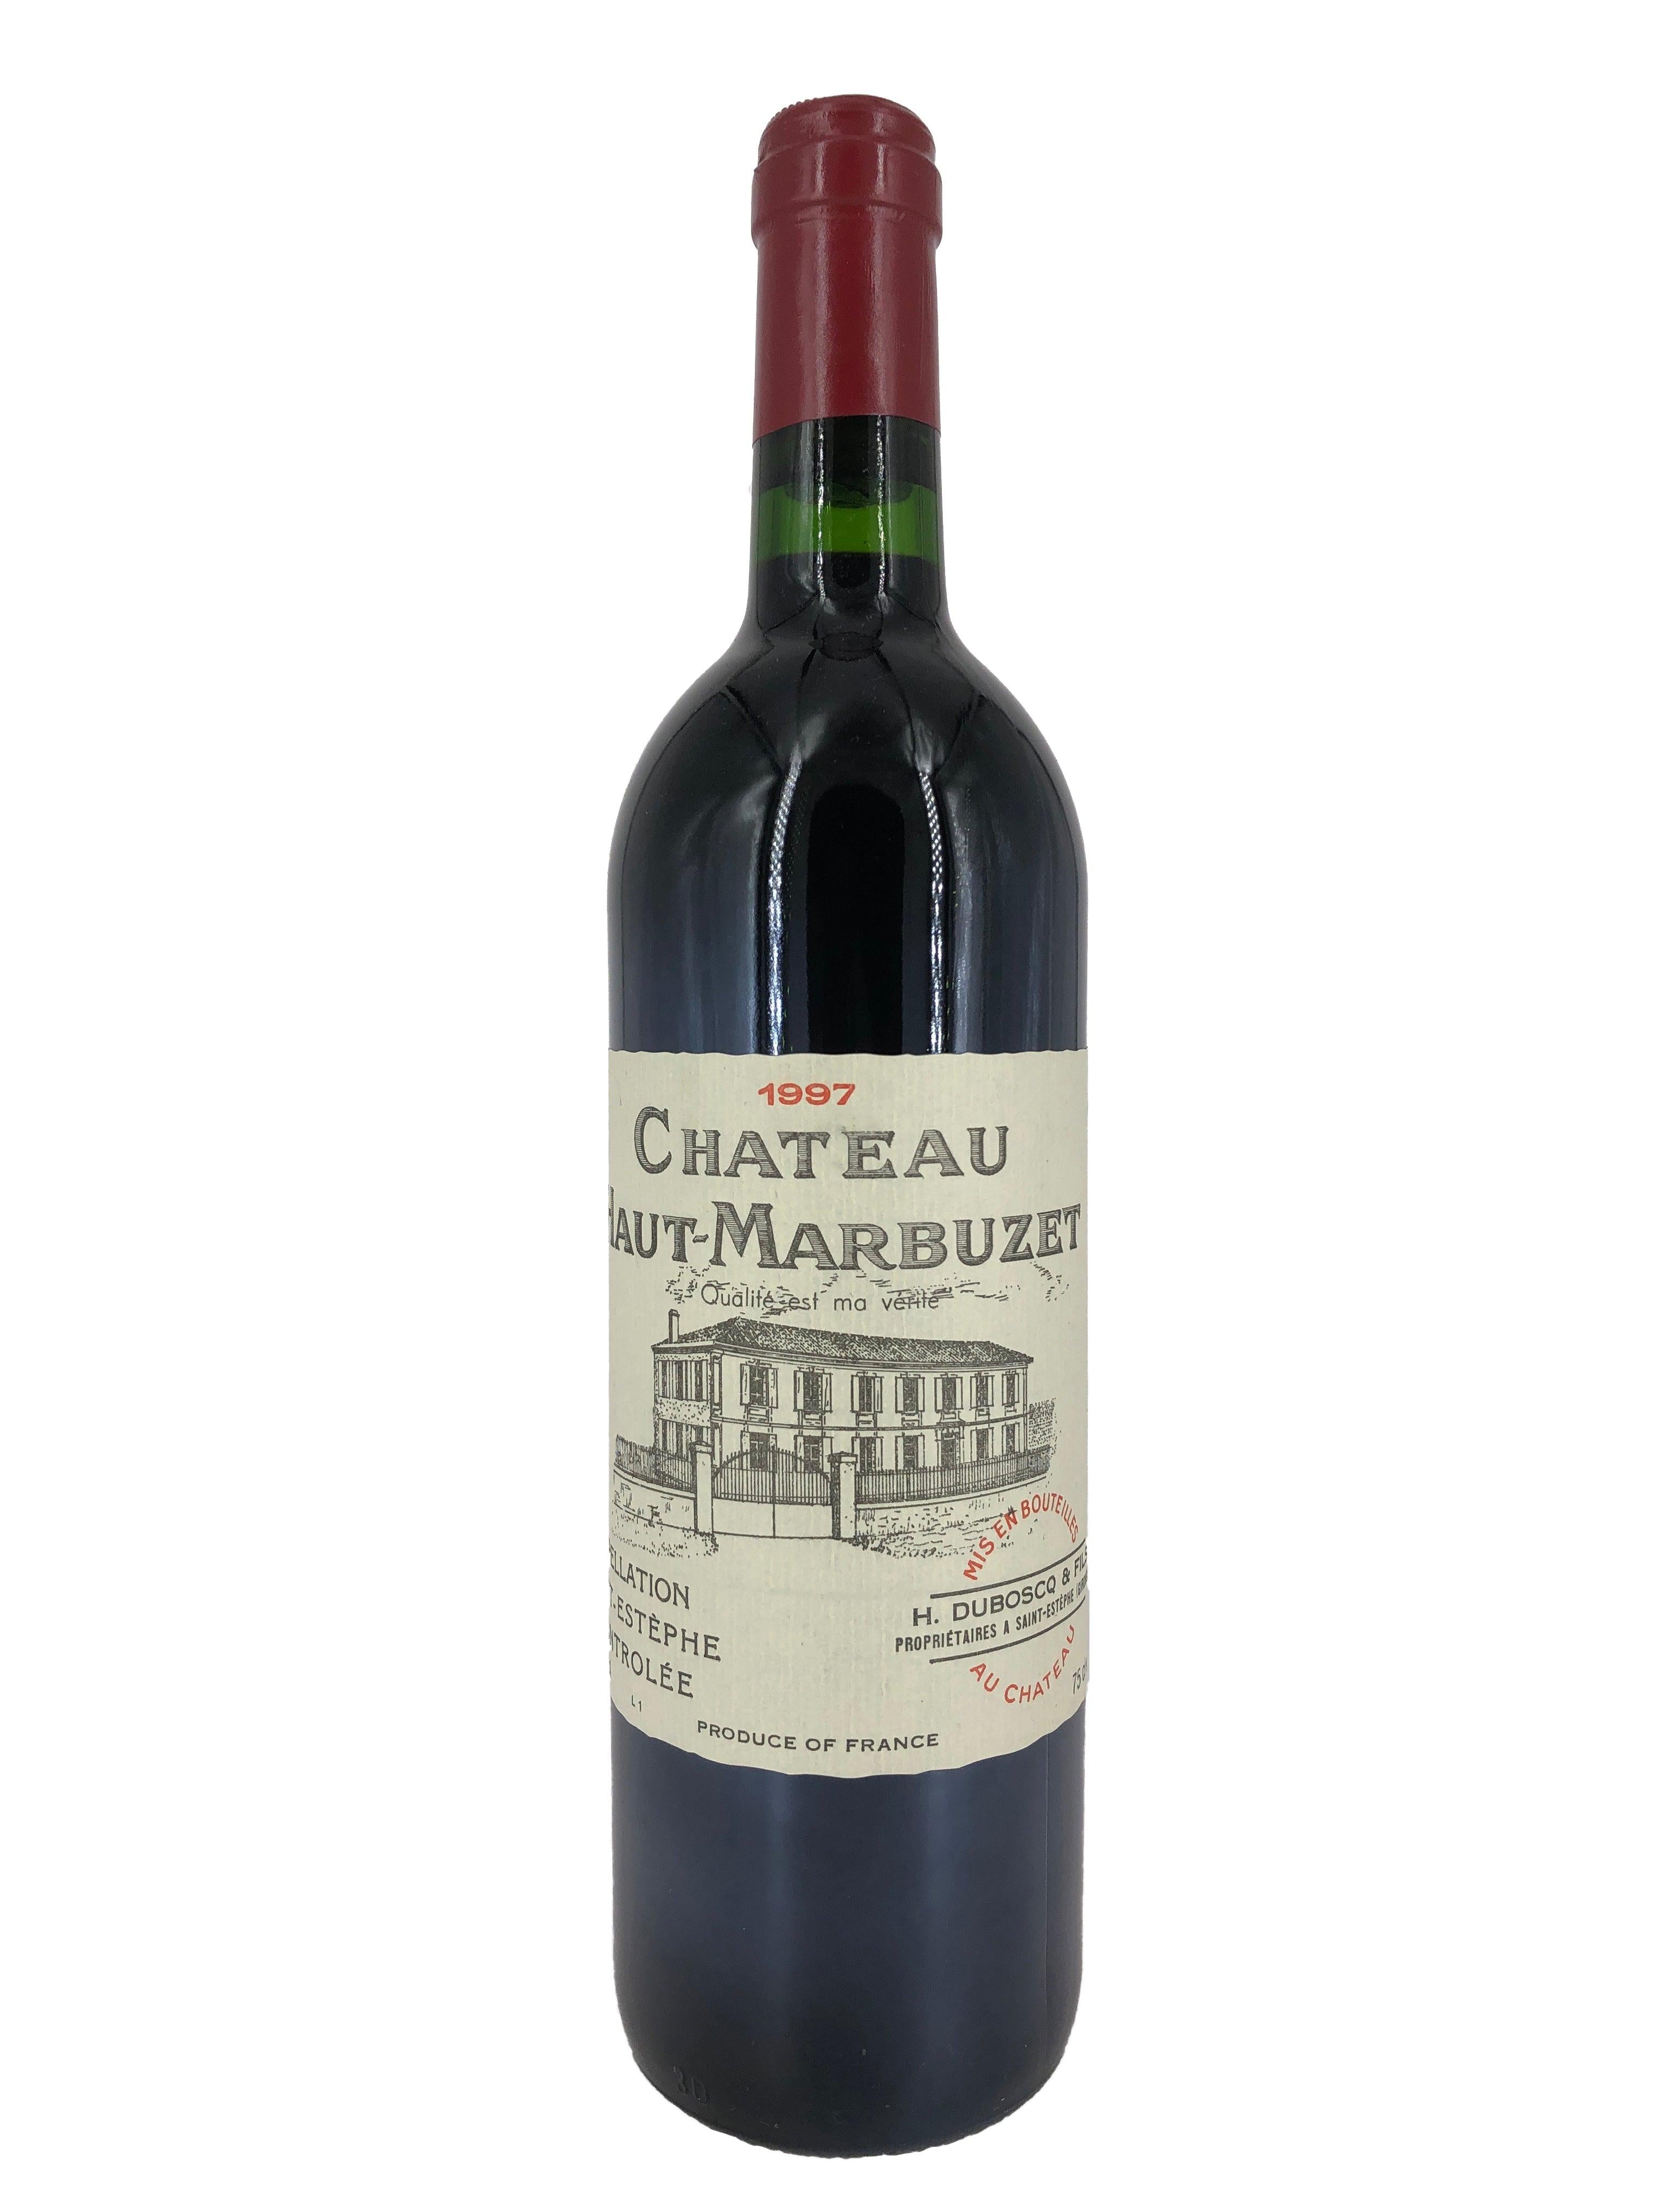 Château Haut Marbuzet 1997 (WS88) - Double S Wine 